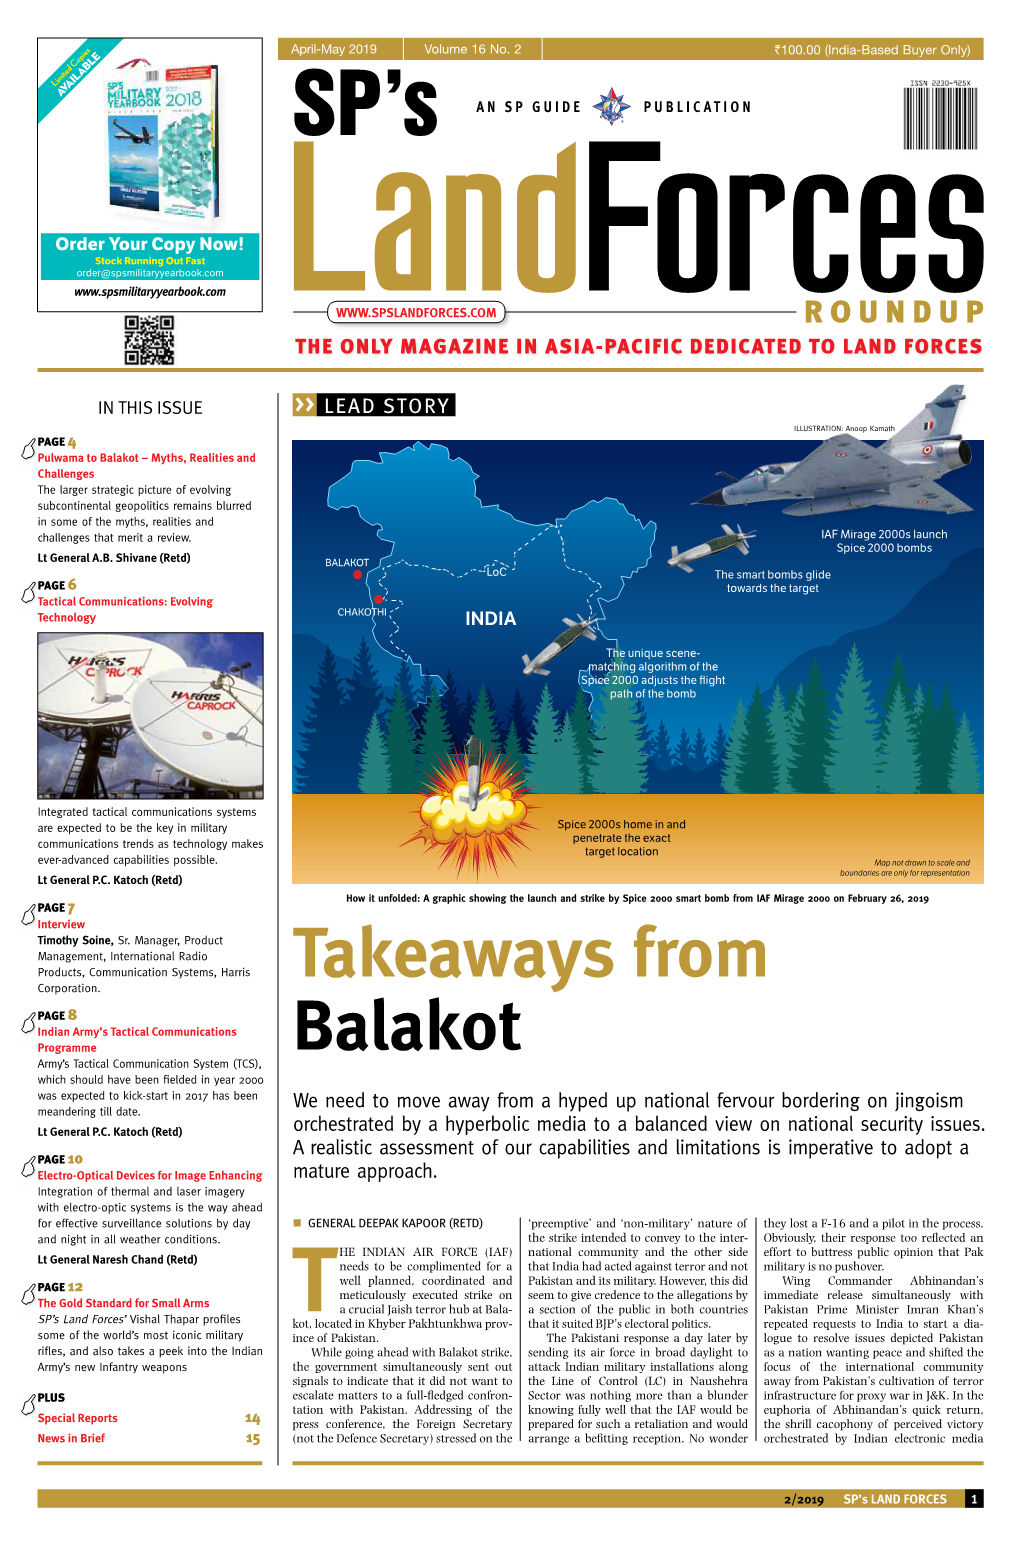 Takeaways from Balakot